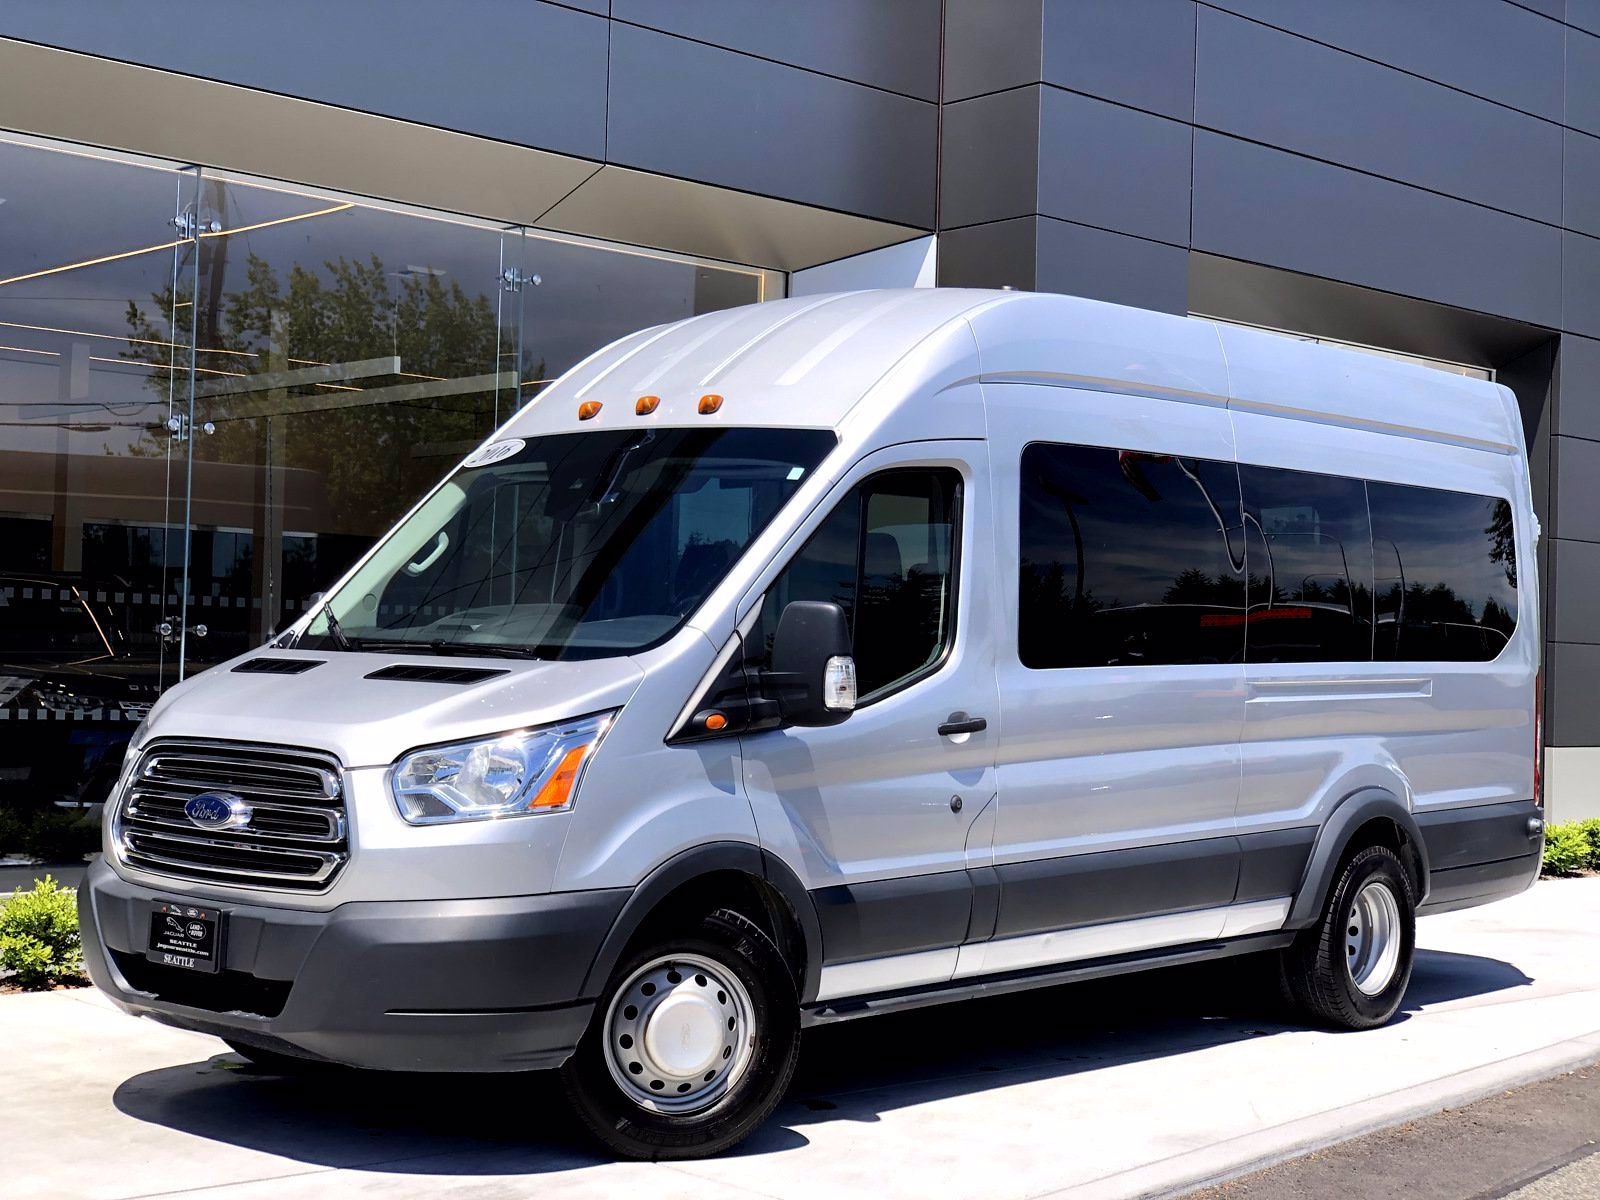 used full size passenger vans for sale